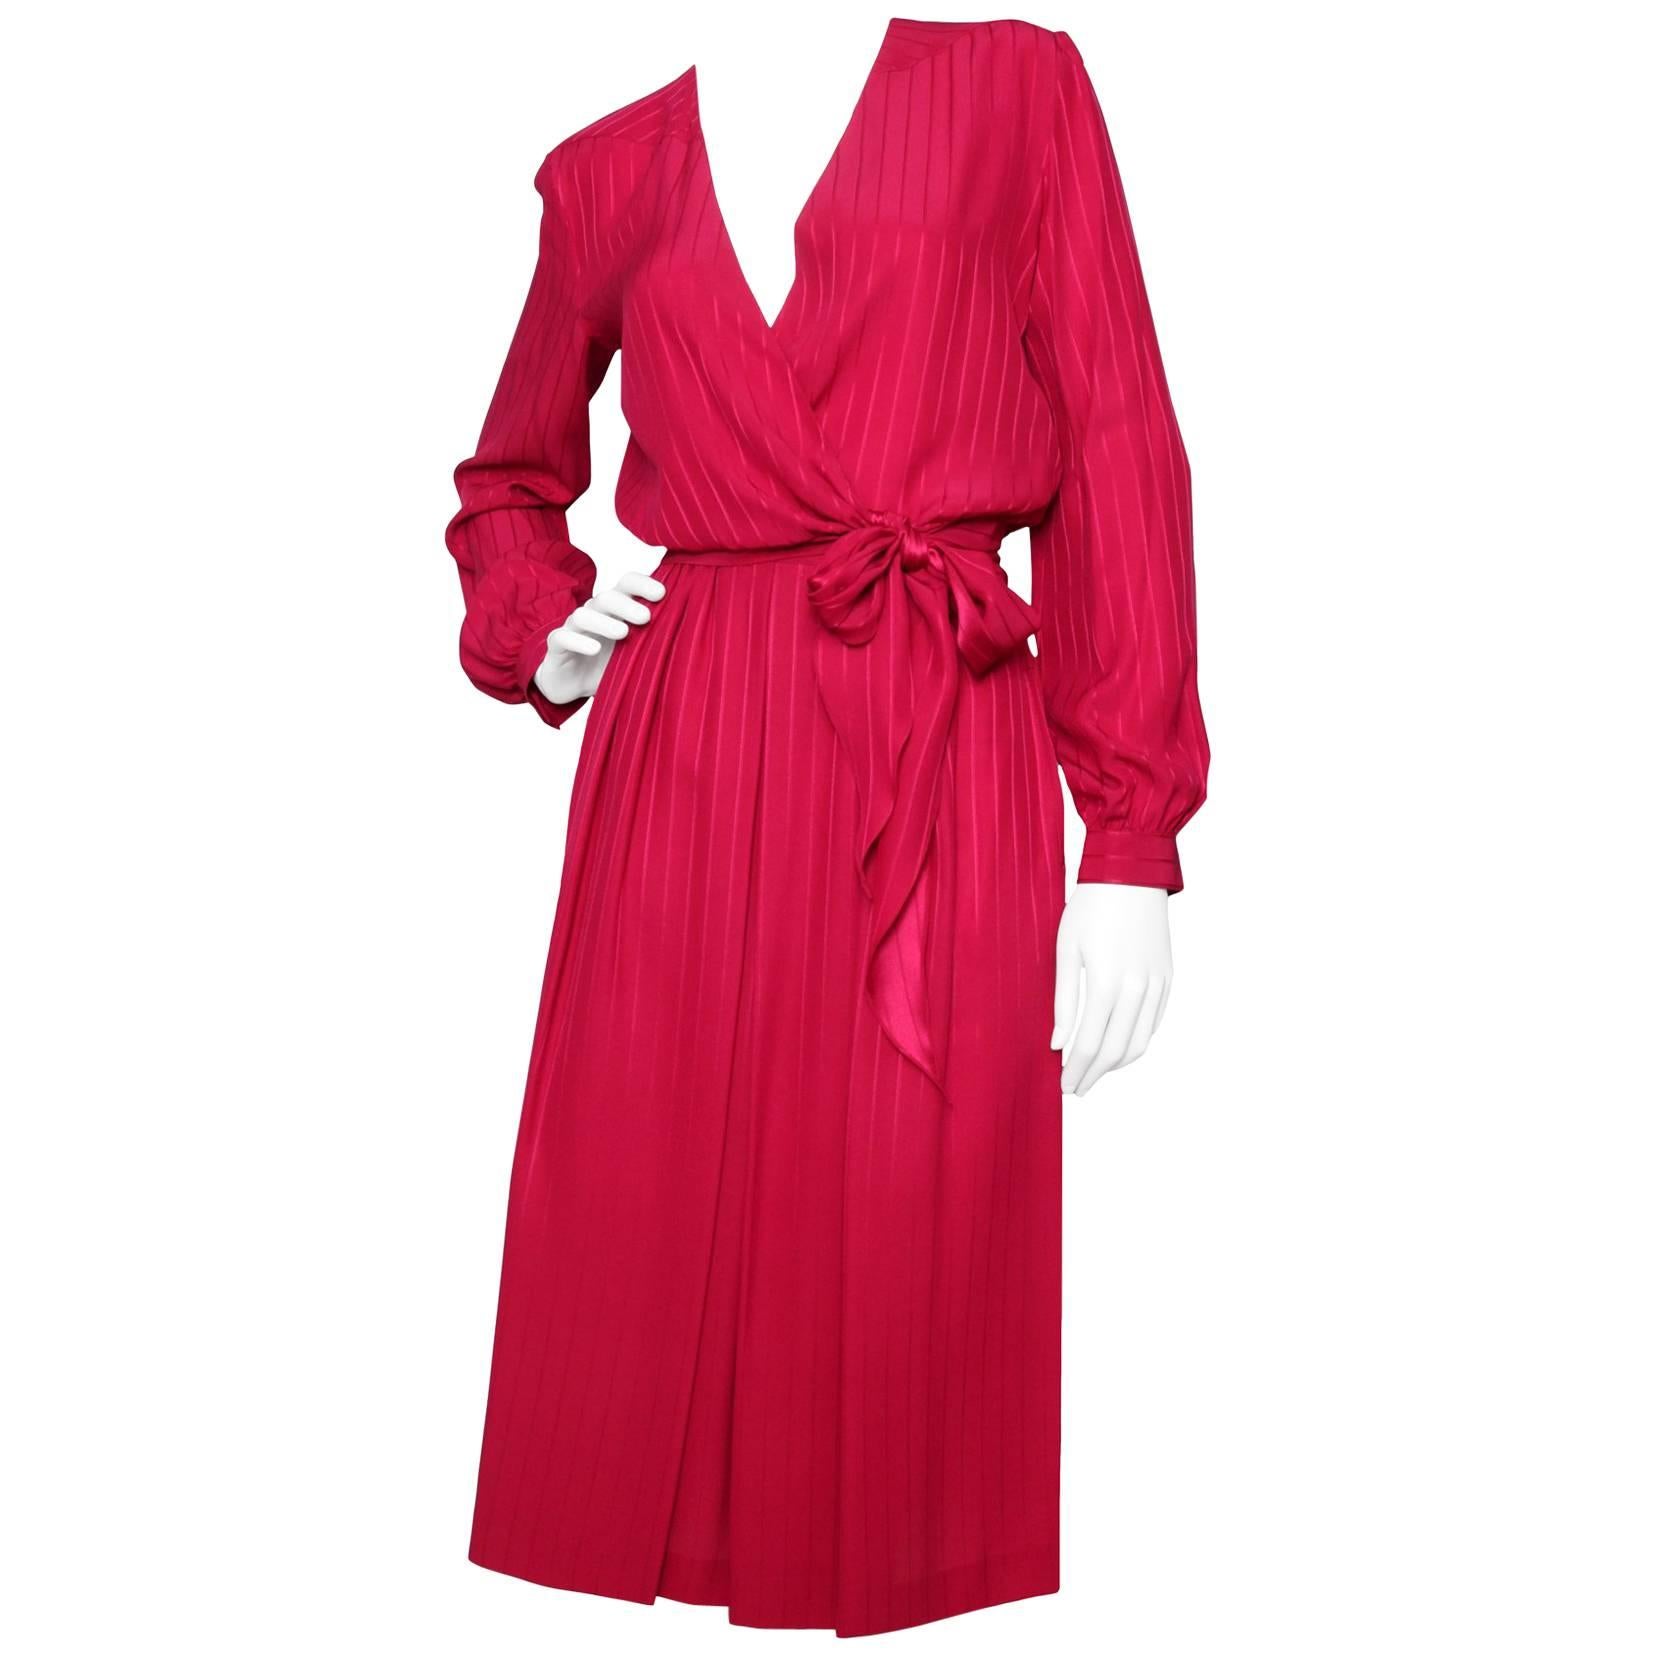 A 1980s Christian Dior Red SIlk Jacquard Skirt & Blouse Ensemble